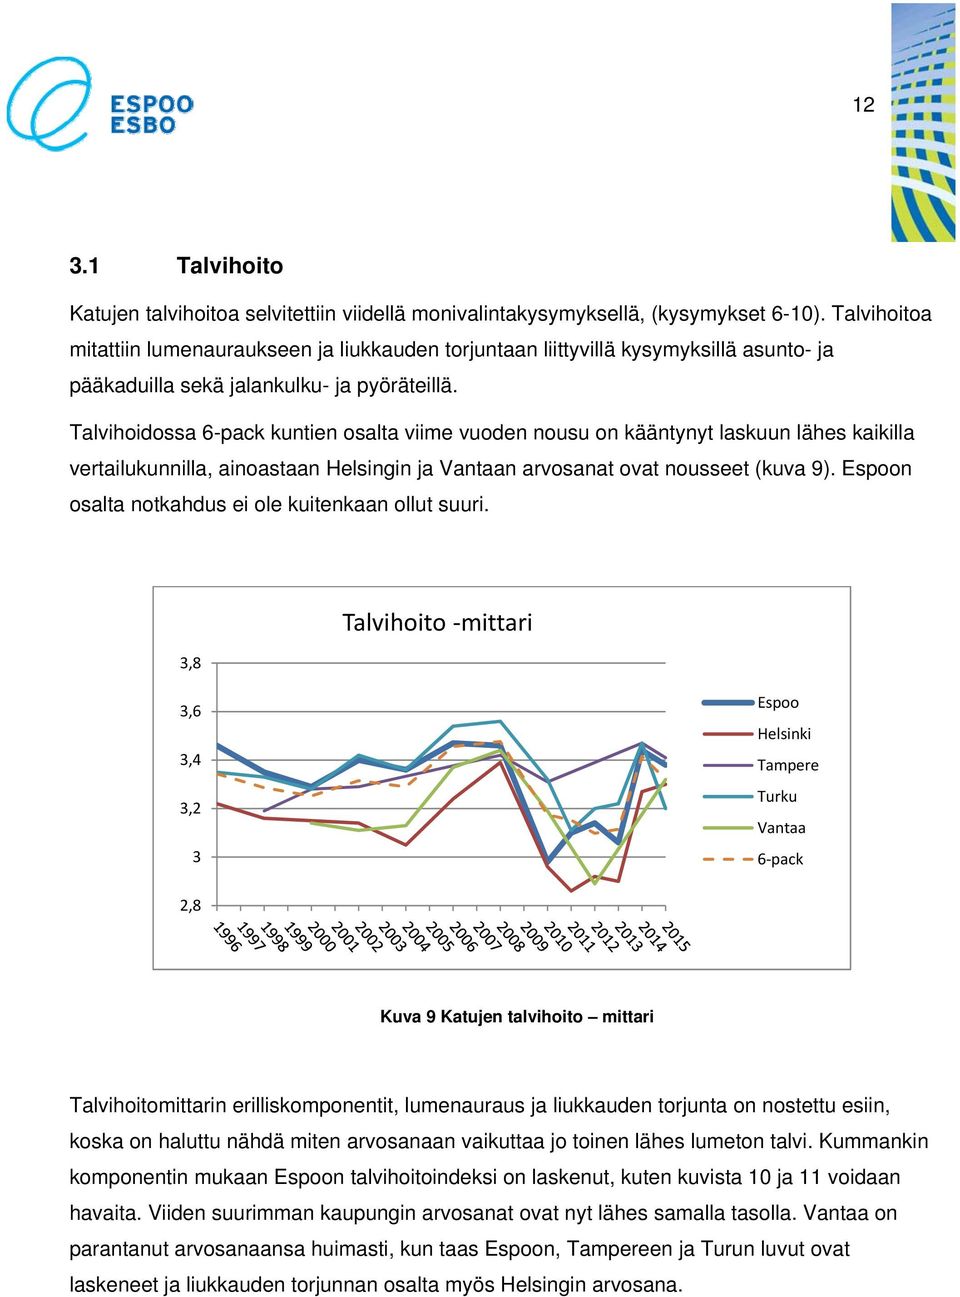 Talvihoidossa 6-pack kuntien osalta viime vuoden nousu on kääntynyt laskuun lähes kaikilla vertailukunnilla, ainoastaan Helsingin ja Vantaan arvosanat ovat nousseet (kuva 9).